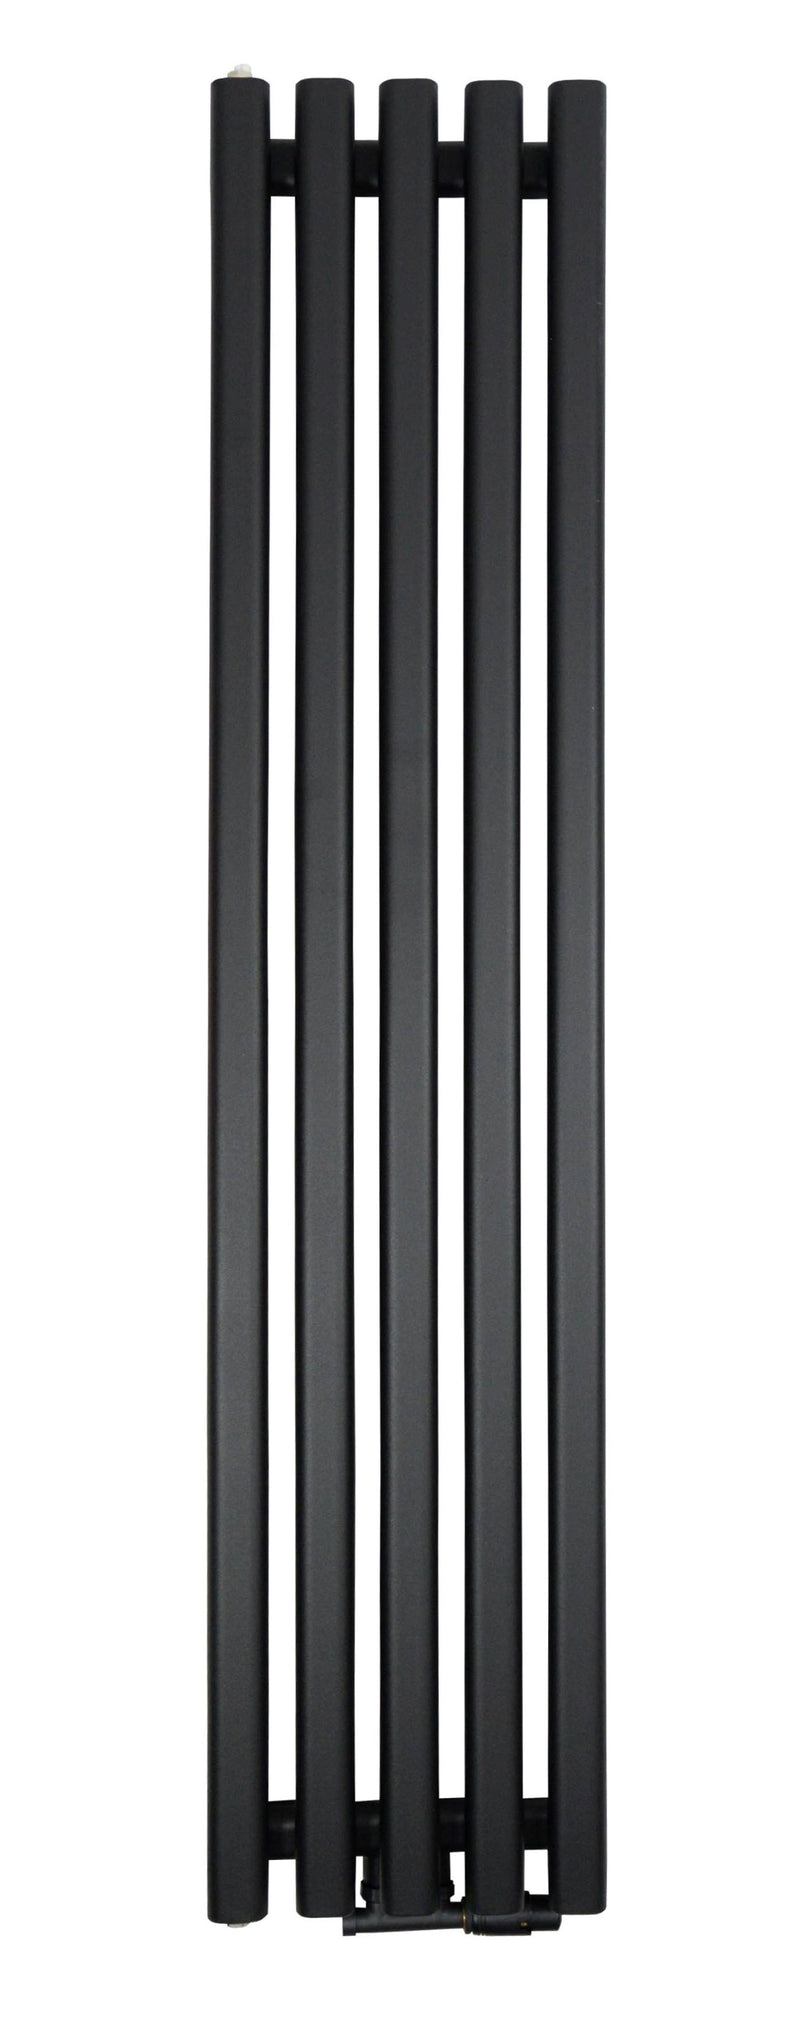 ZVR18033B - Black vertical radiator 180/33